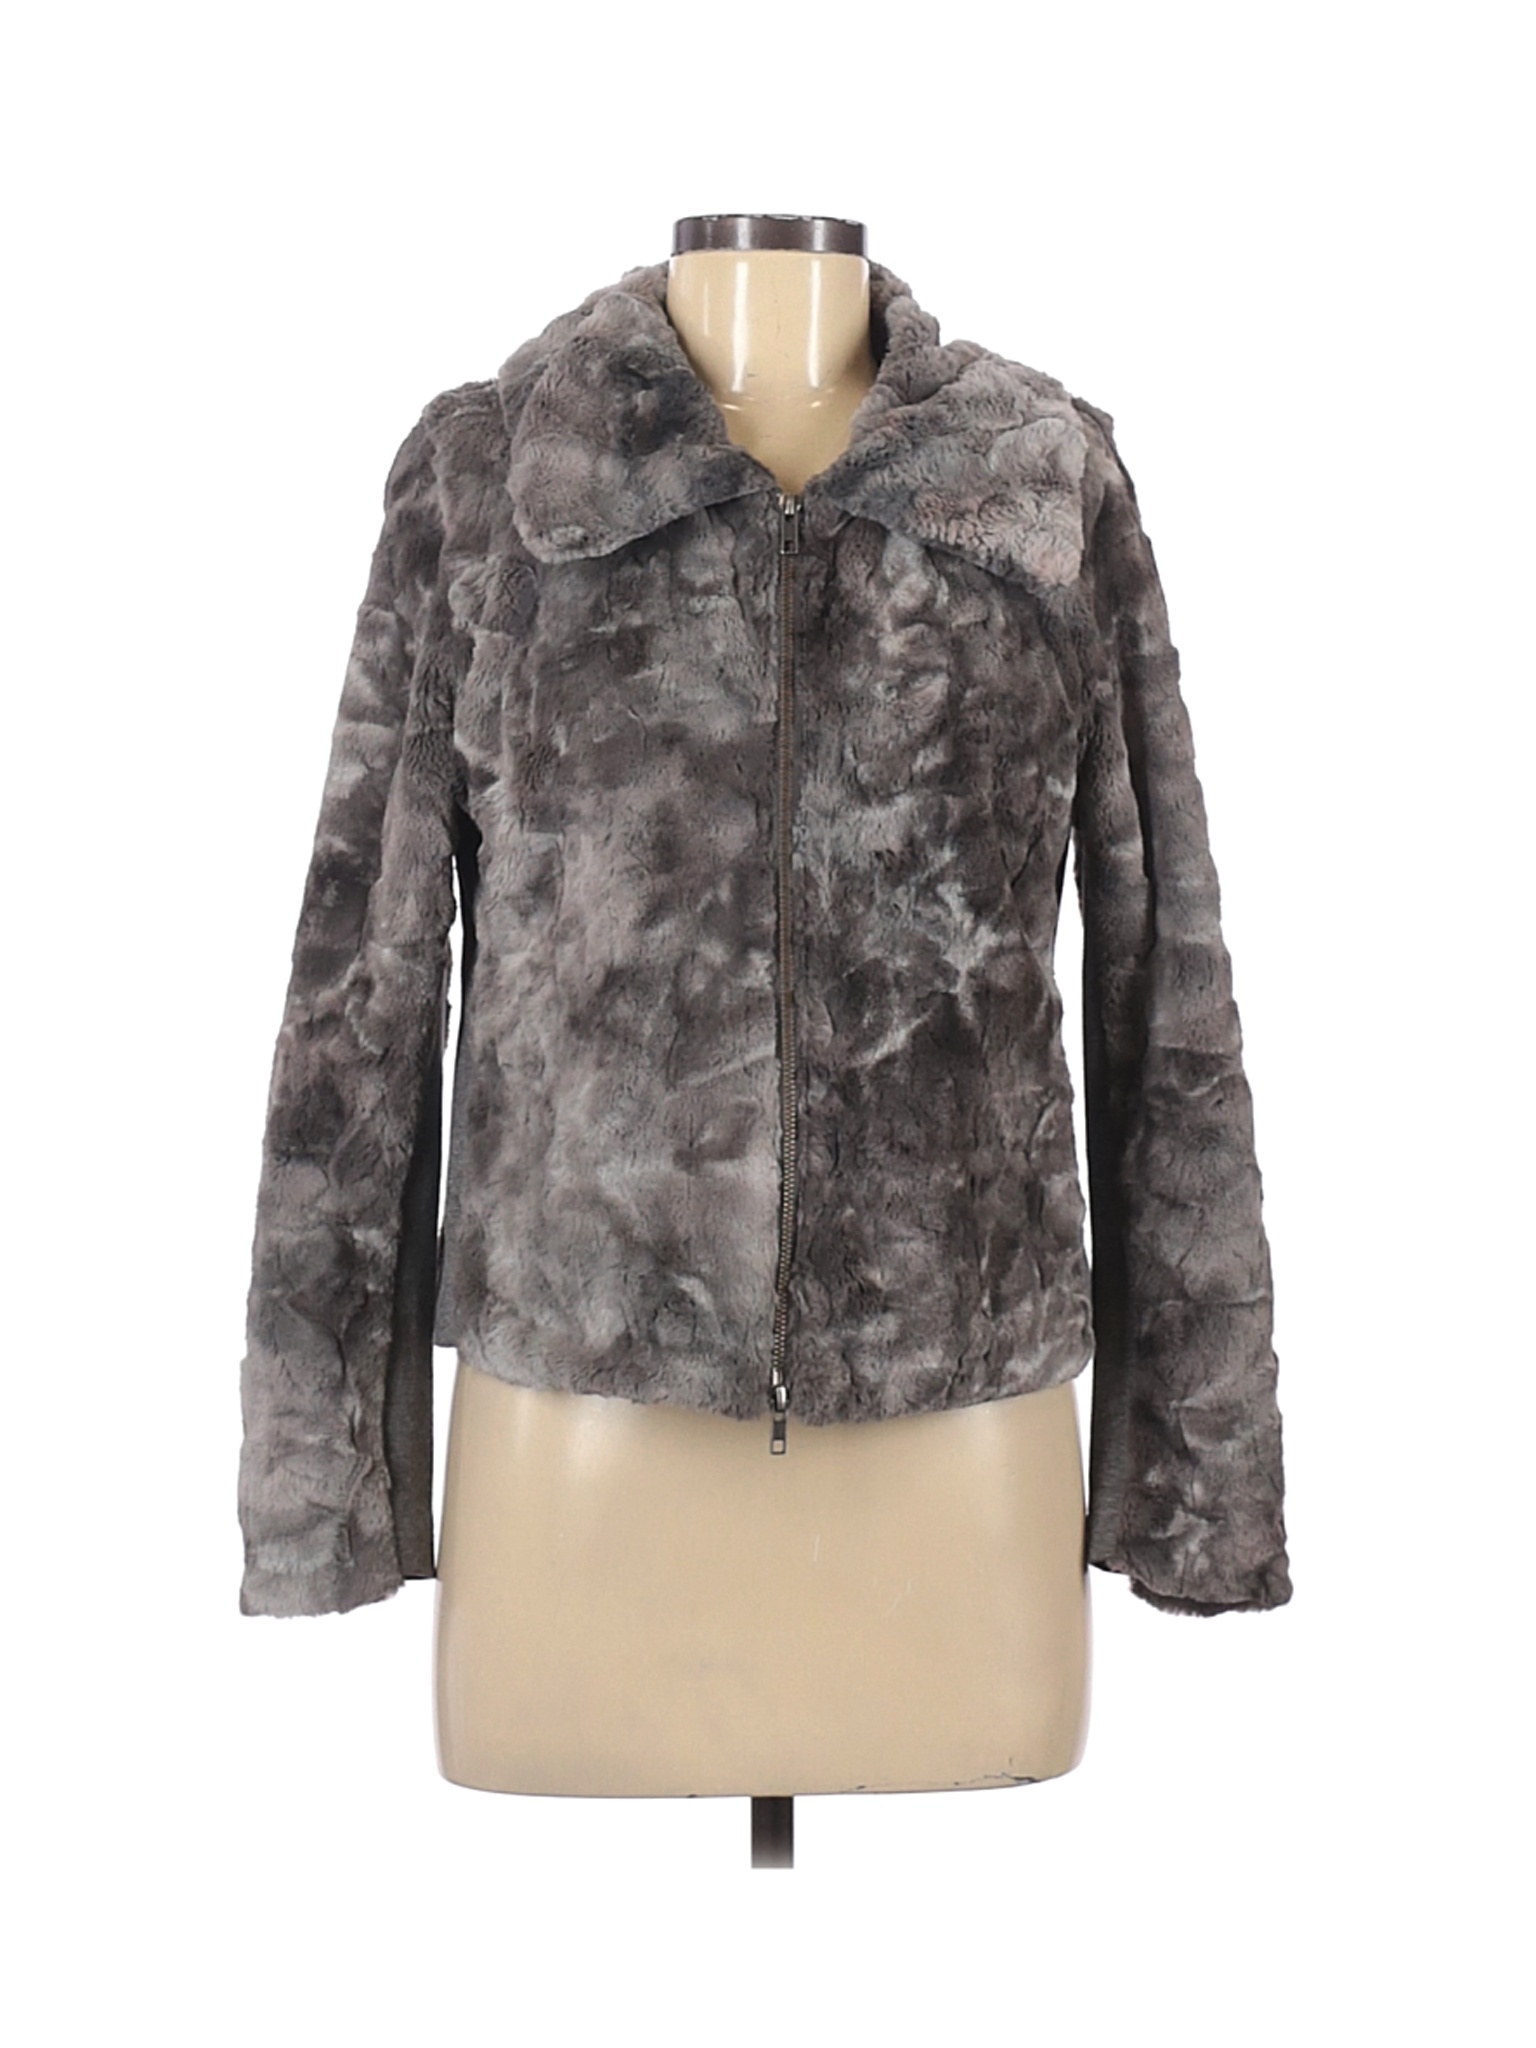 CAbi Women Gray Faux Fur Jacket S | eBay